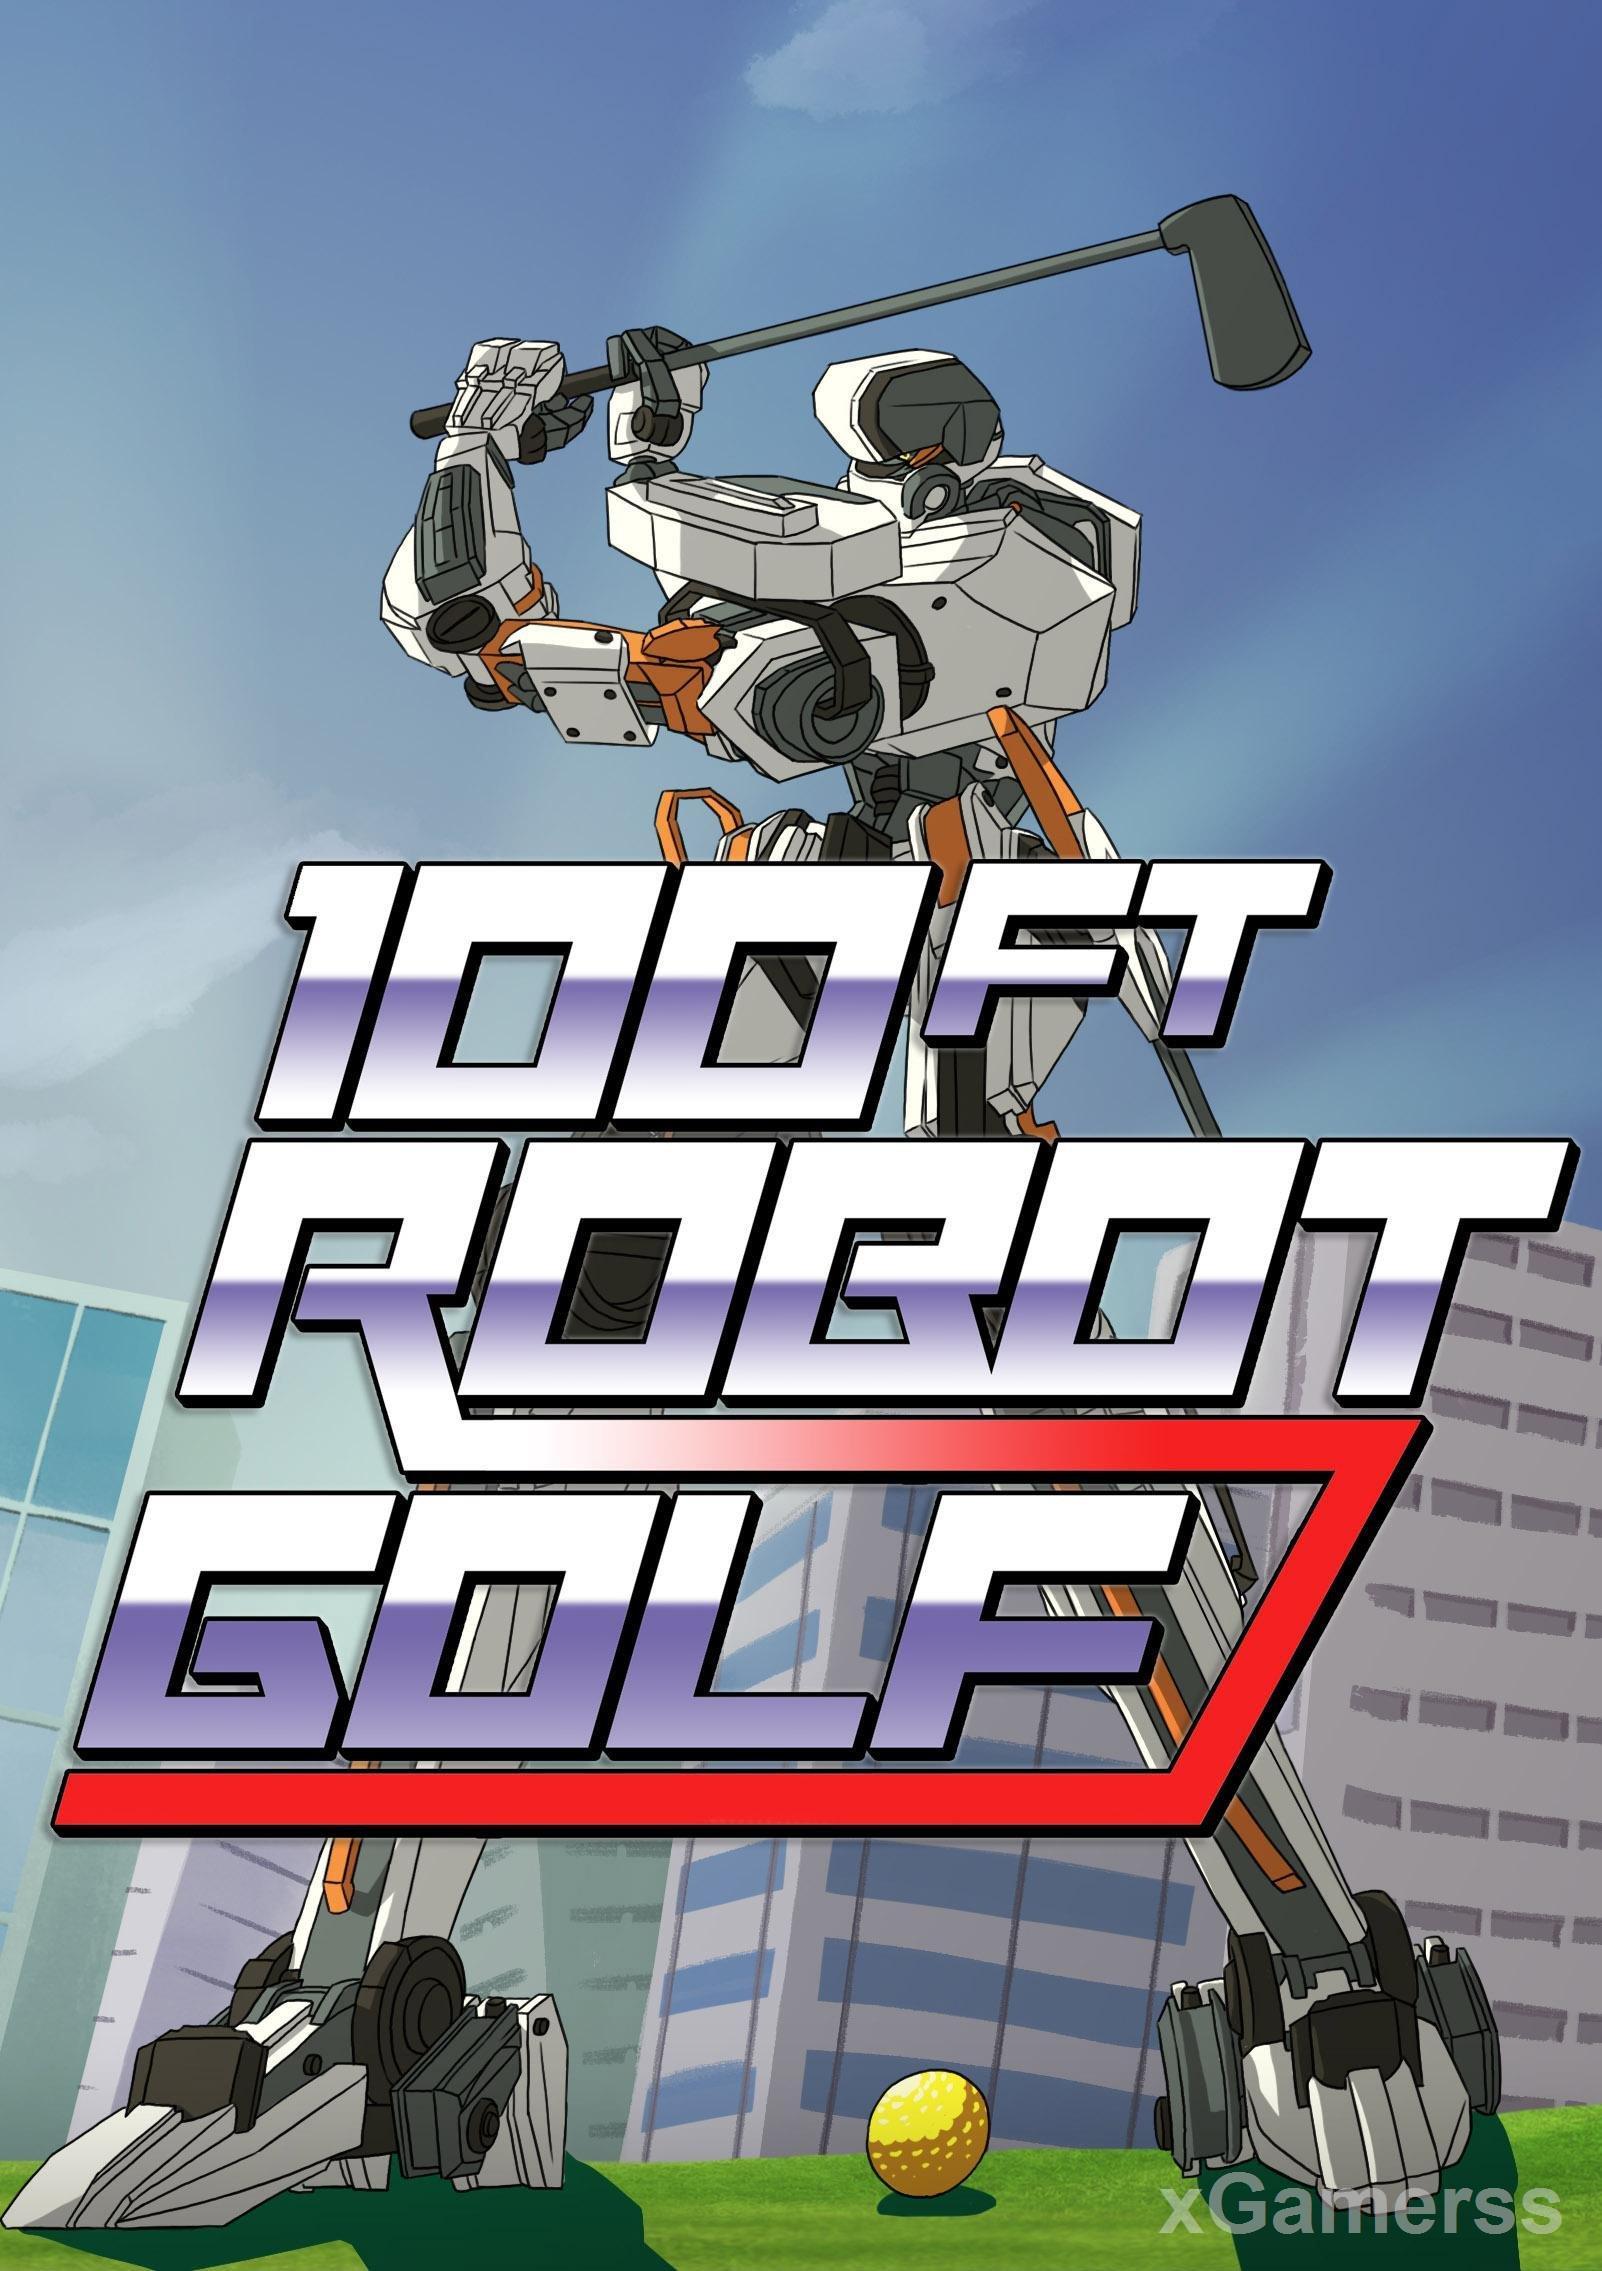 100ft Robot Golf - Golf with Robots